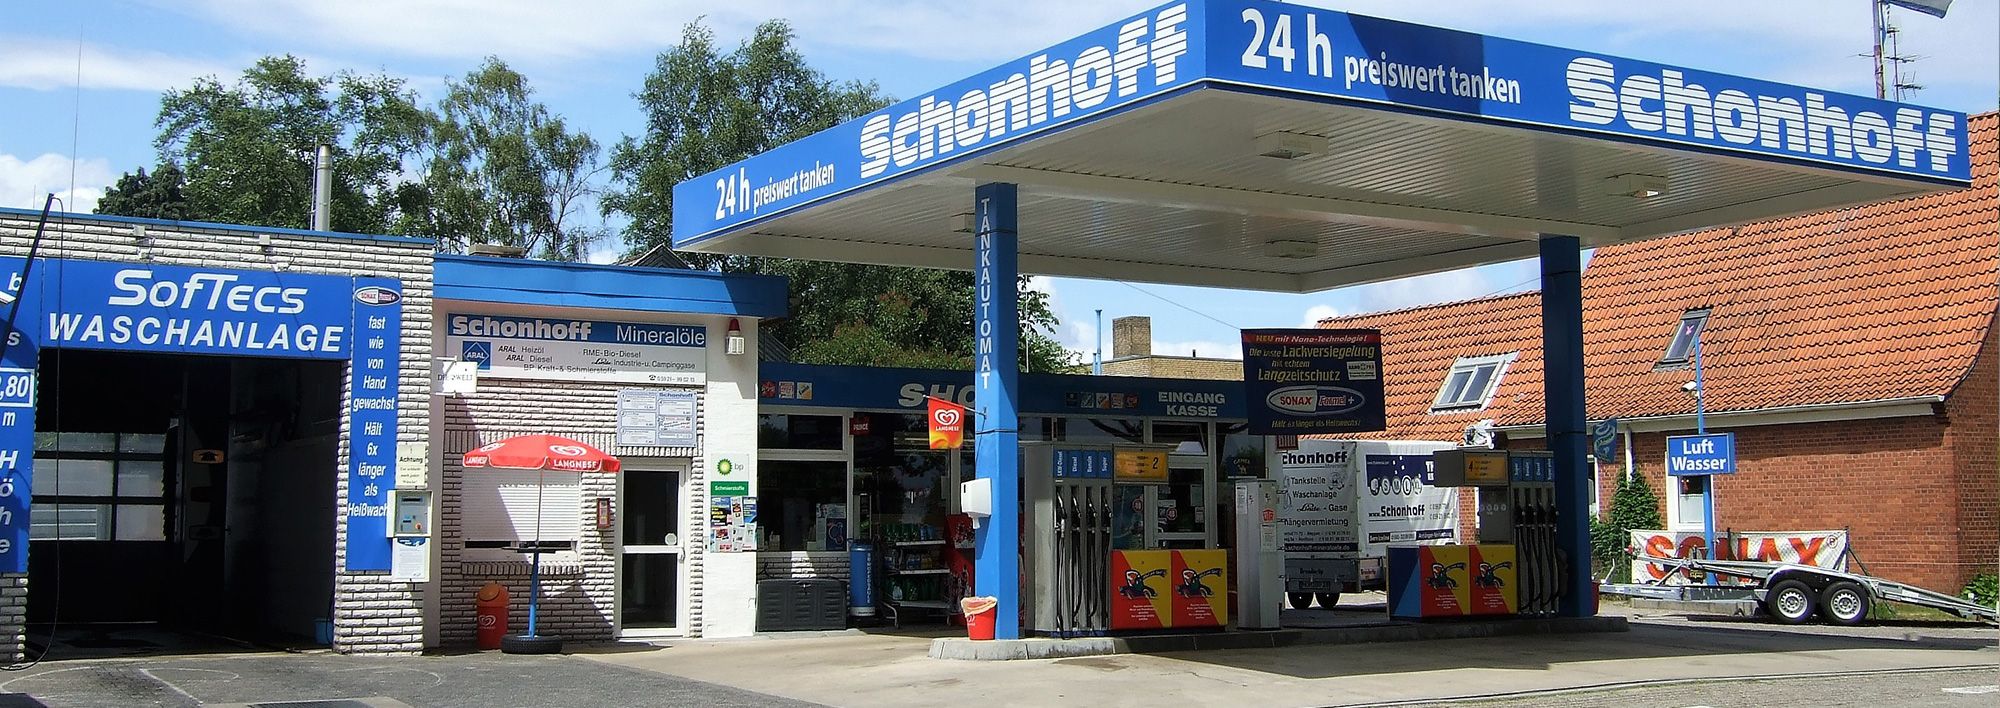 Tankstelle in Nordhorn | Schonhoff Mineralölhandel & Tankstellen GmbH